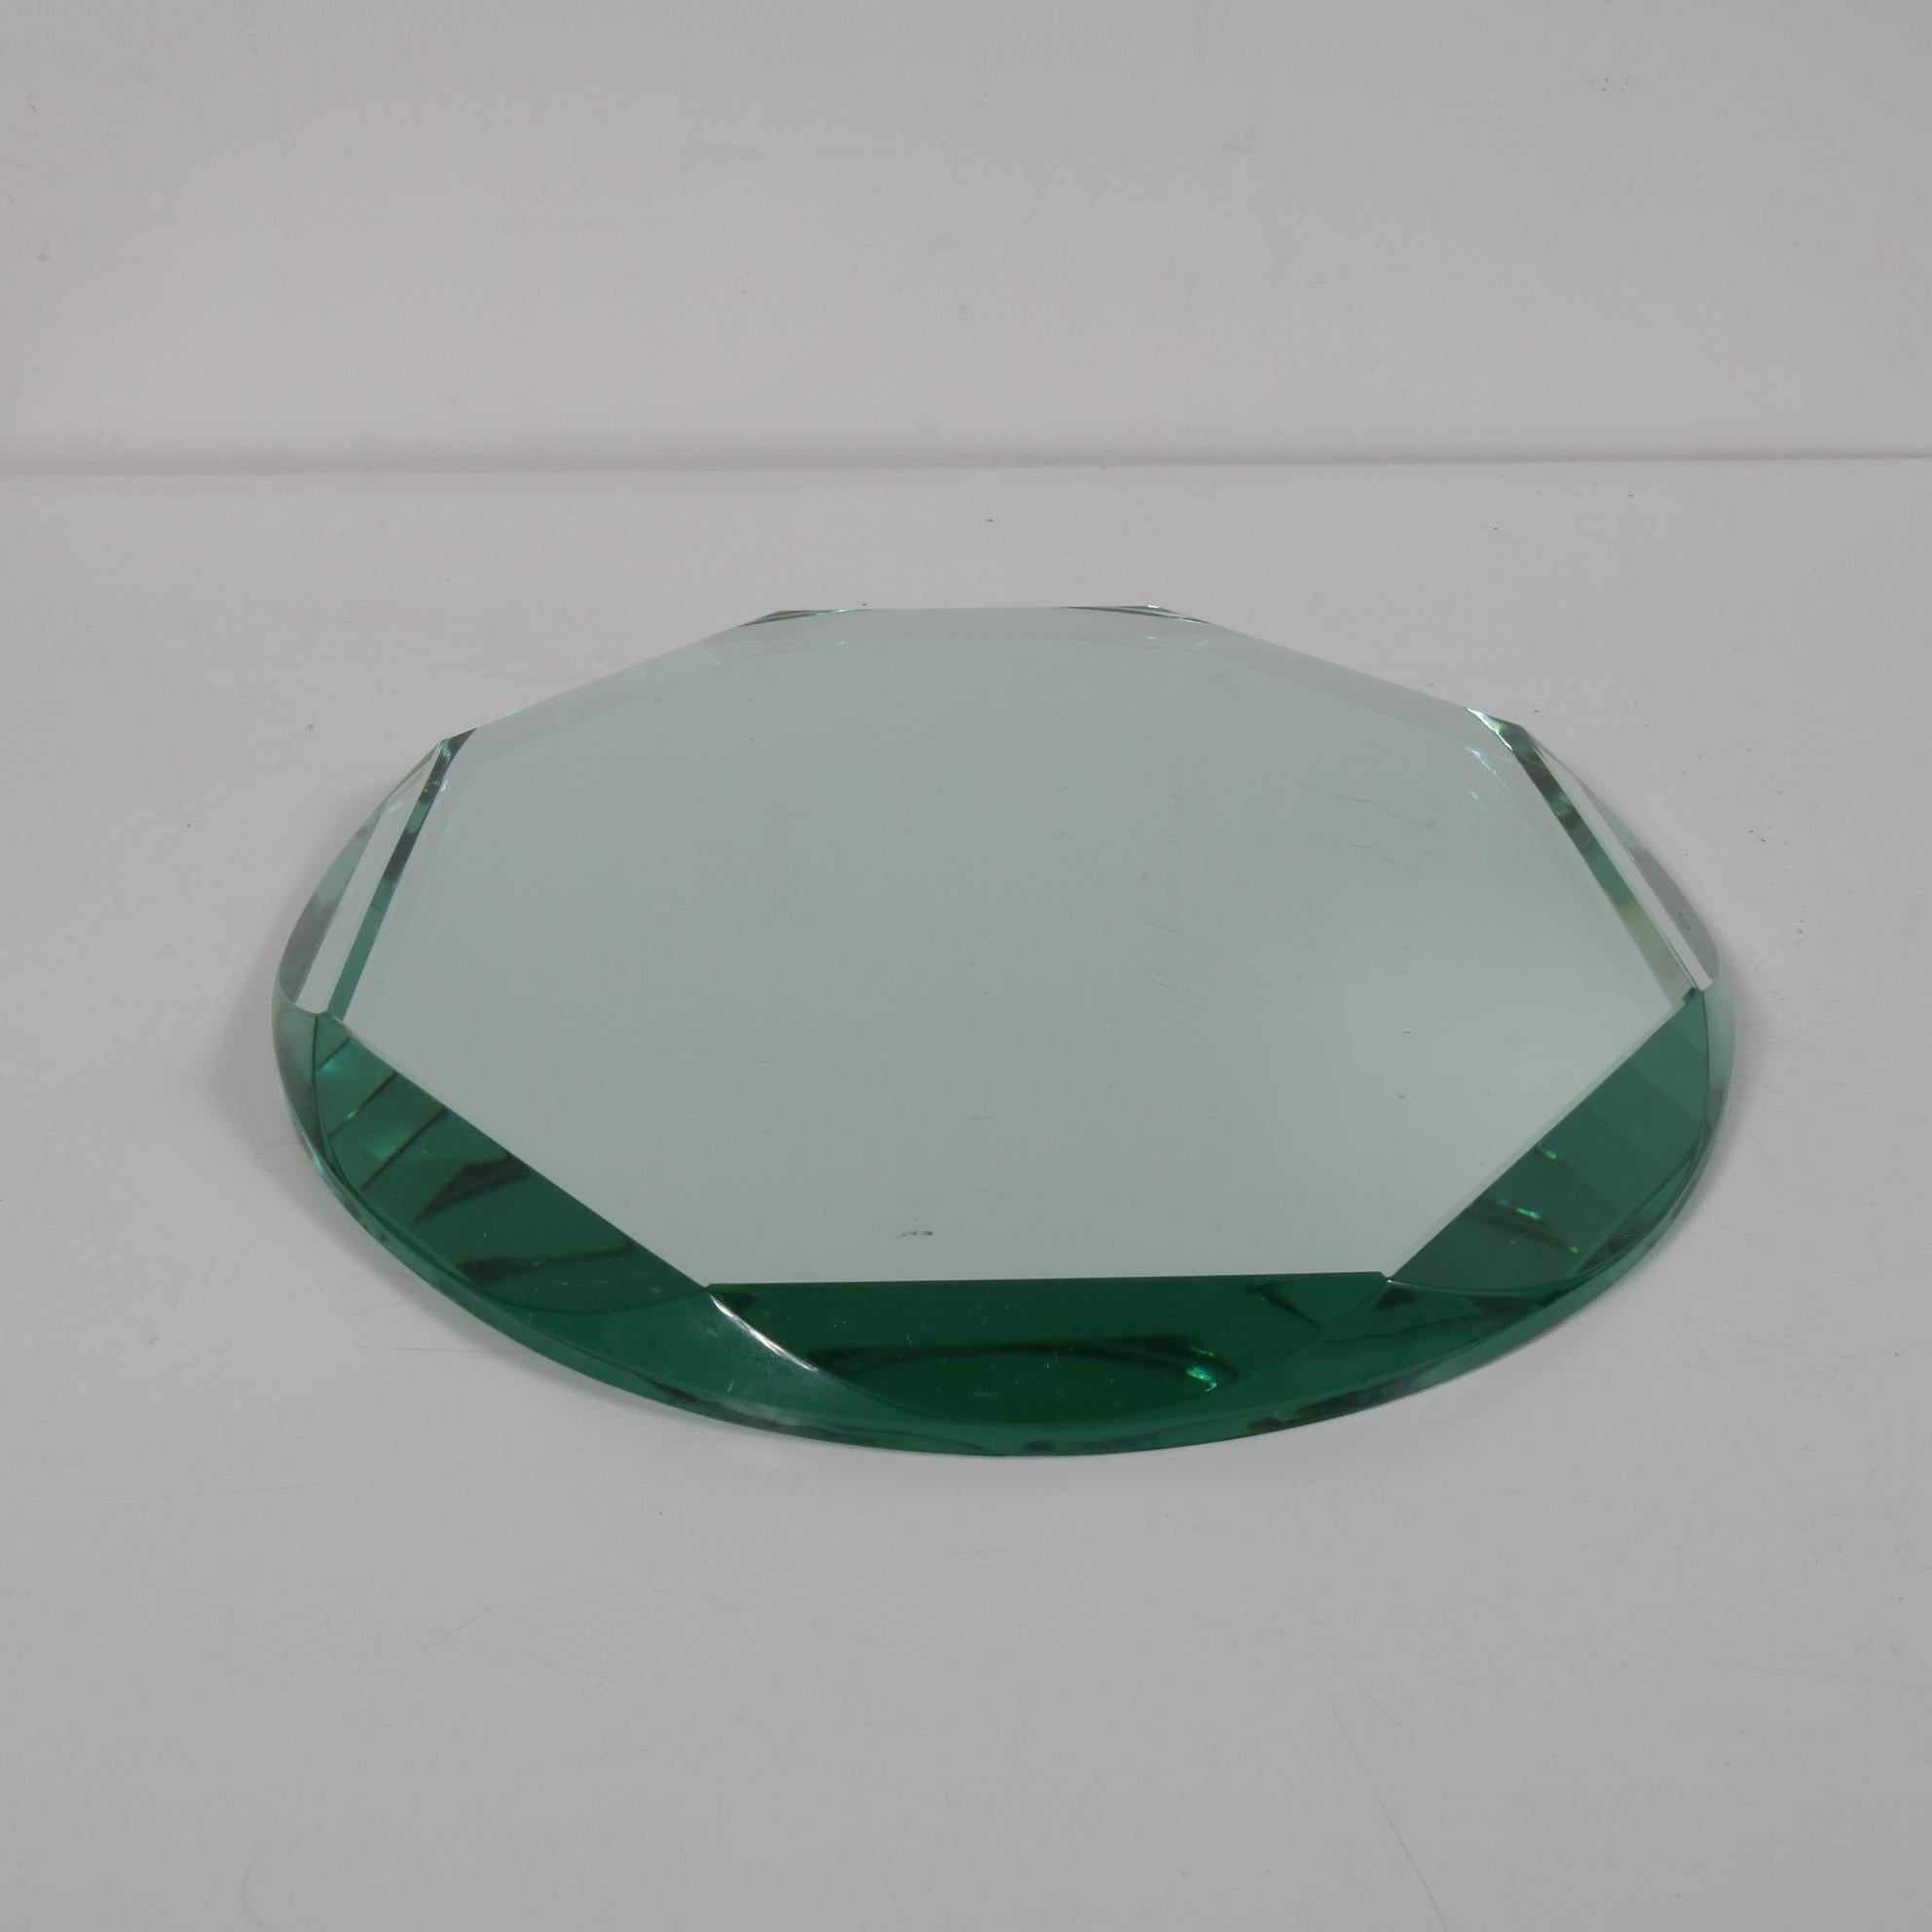 Un magnifique centre de table italien, fabriqué vers 1950.

Il est fait de verre miroir de haute qualité avec du verre clair, poli au diamant, bords biseautés dans différents angles. Cela crée un effet géométrique unique. Sous tous les angles,